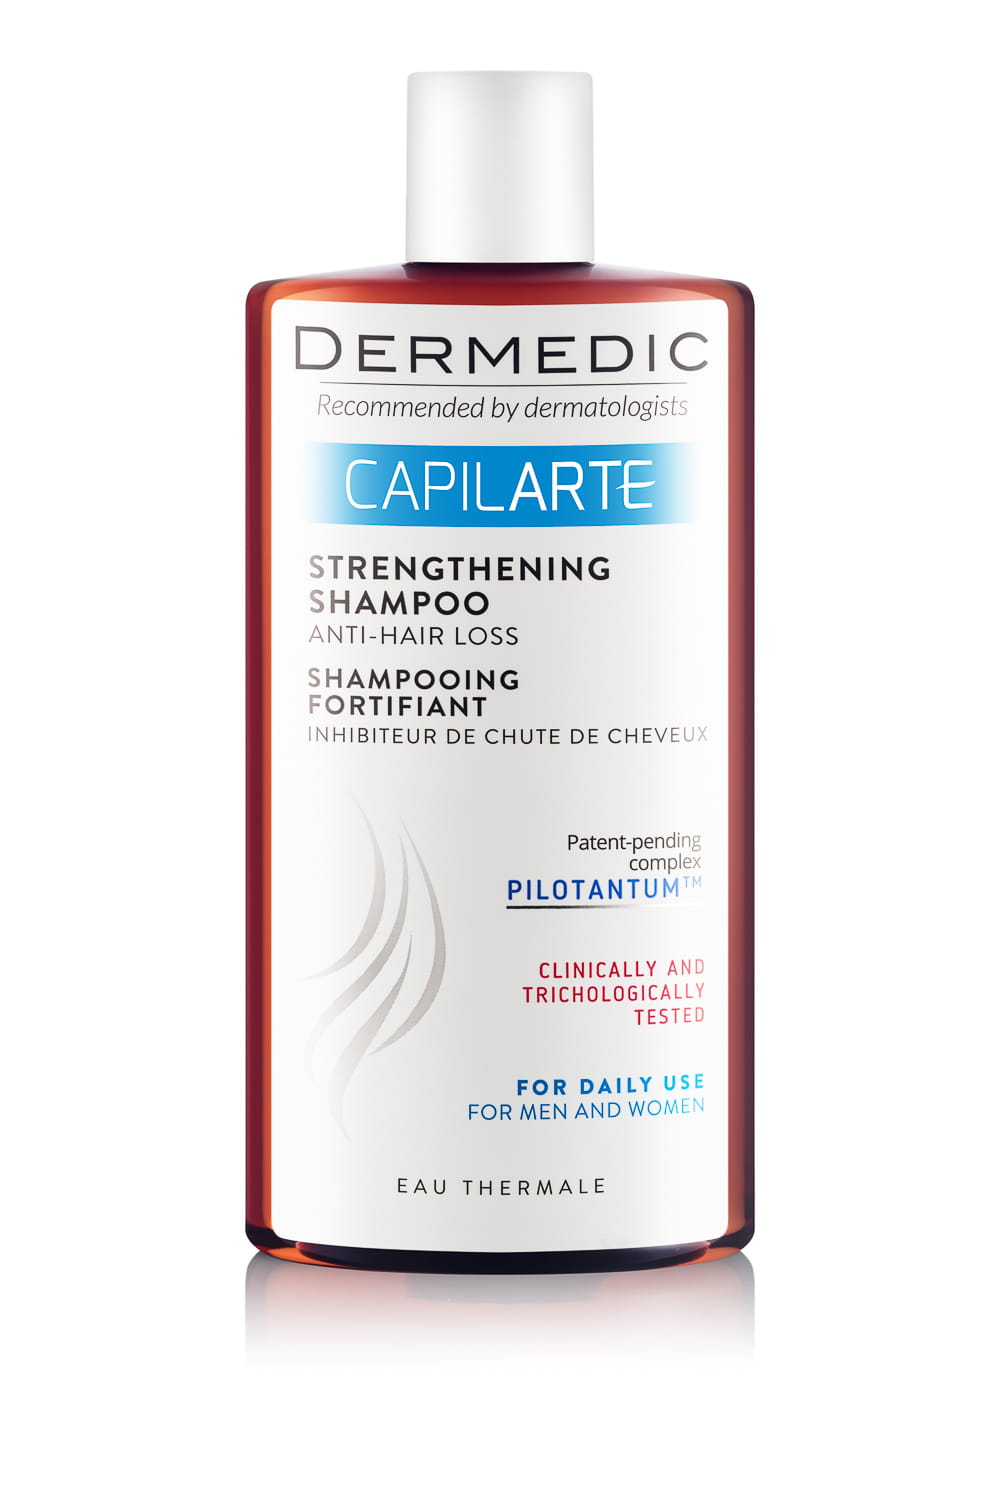 dermedic capilarte szampon wzmacniający hamujący wypadanie włosów 300 ml